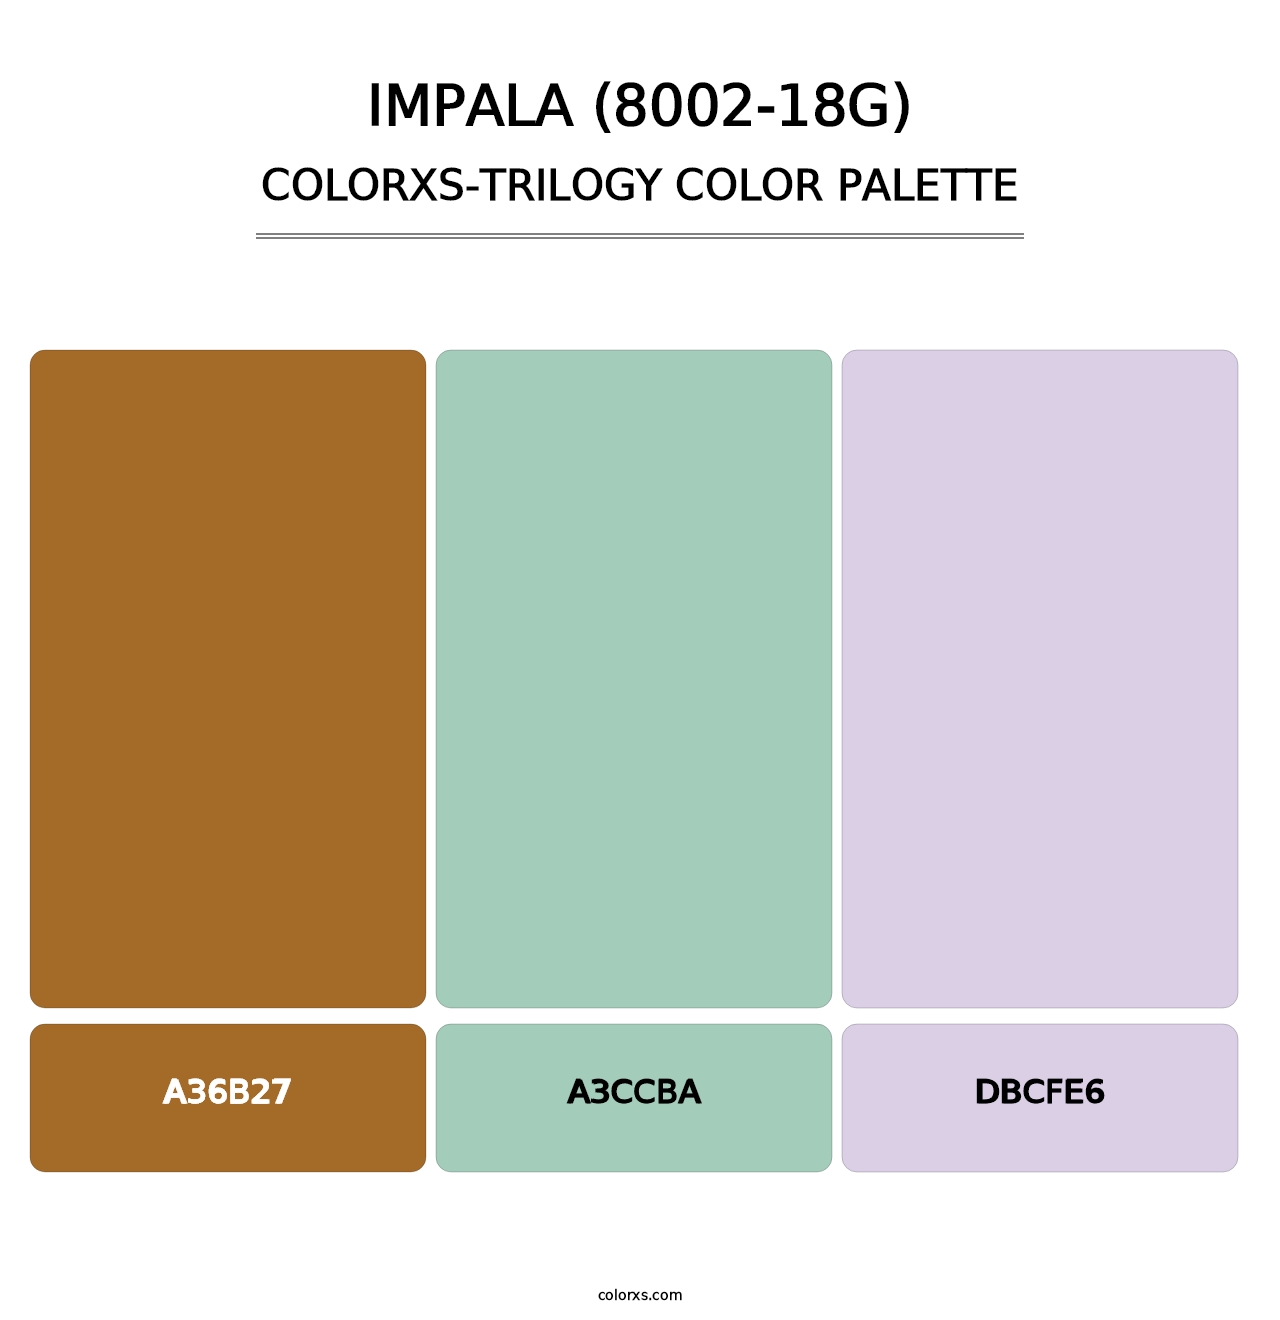 Impala (8002-18G) - Colorxs Trilogy Palette